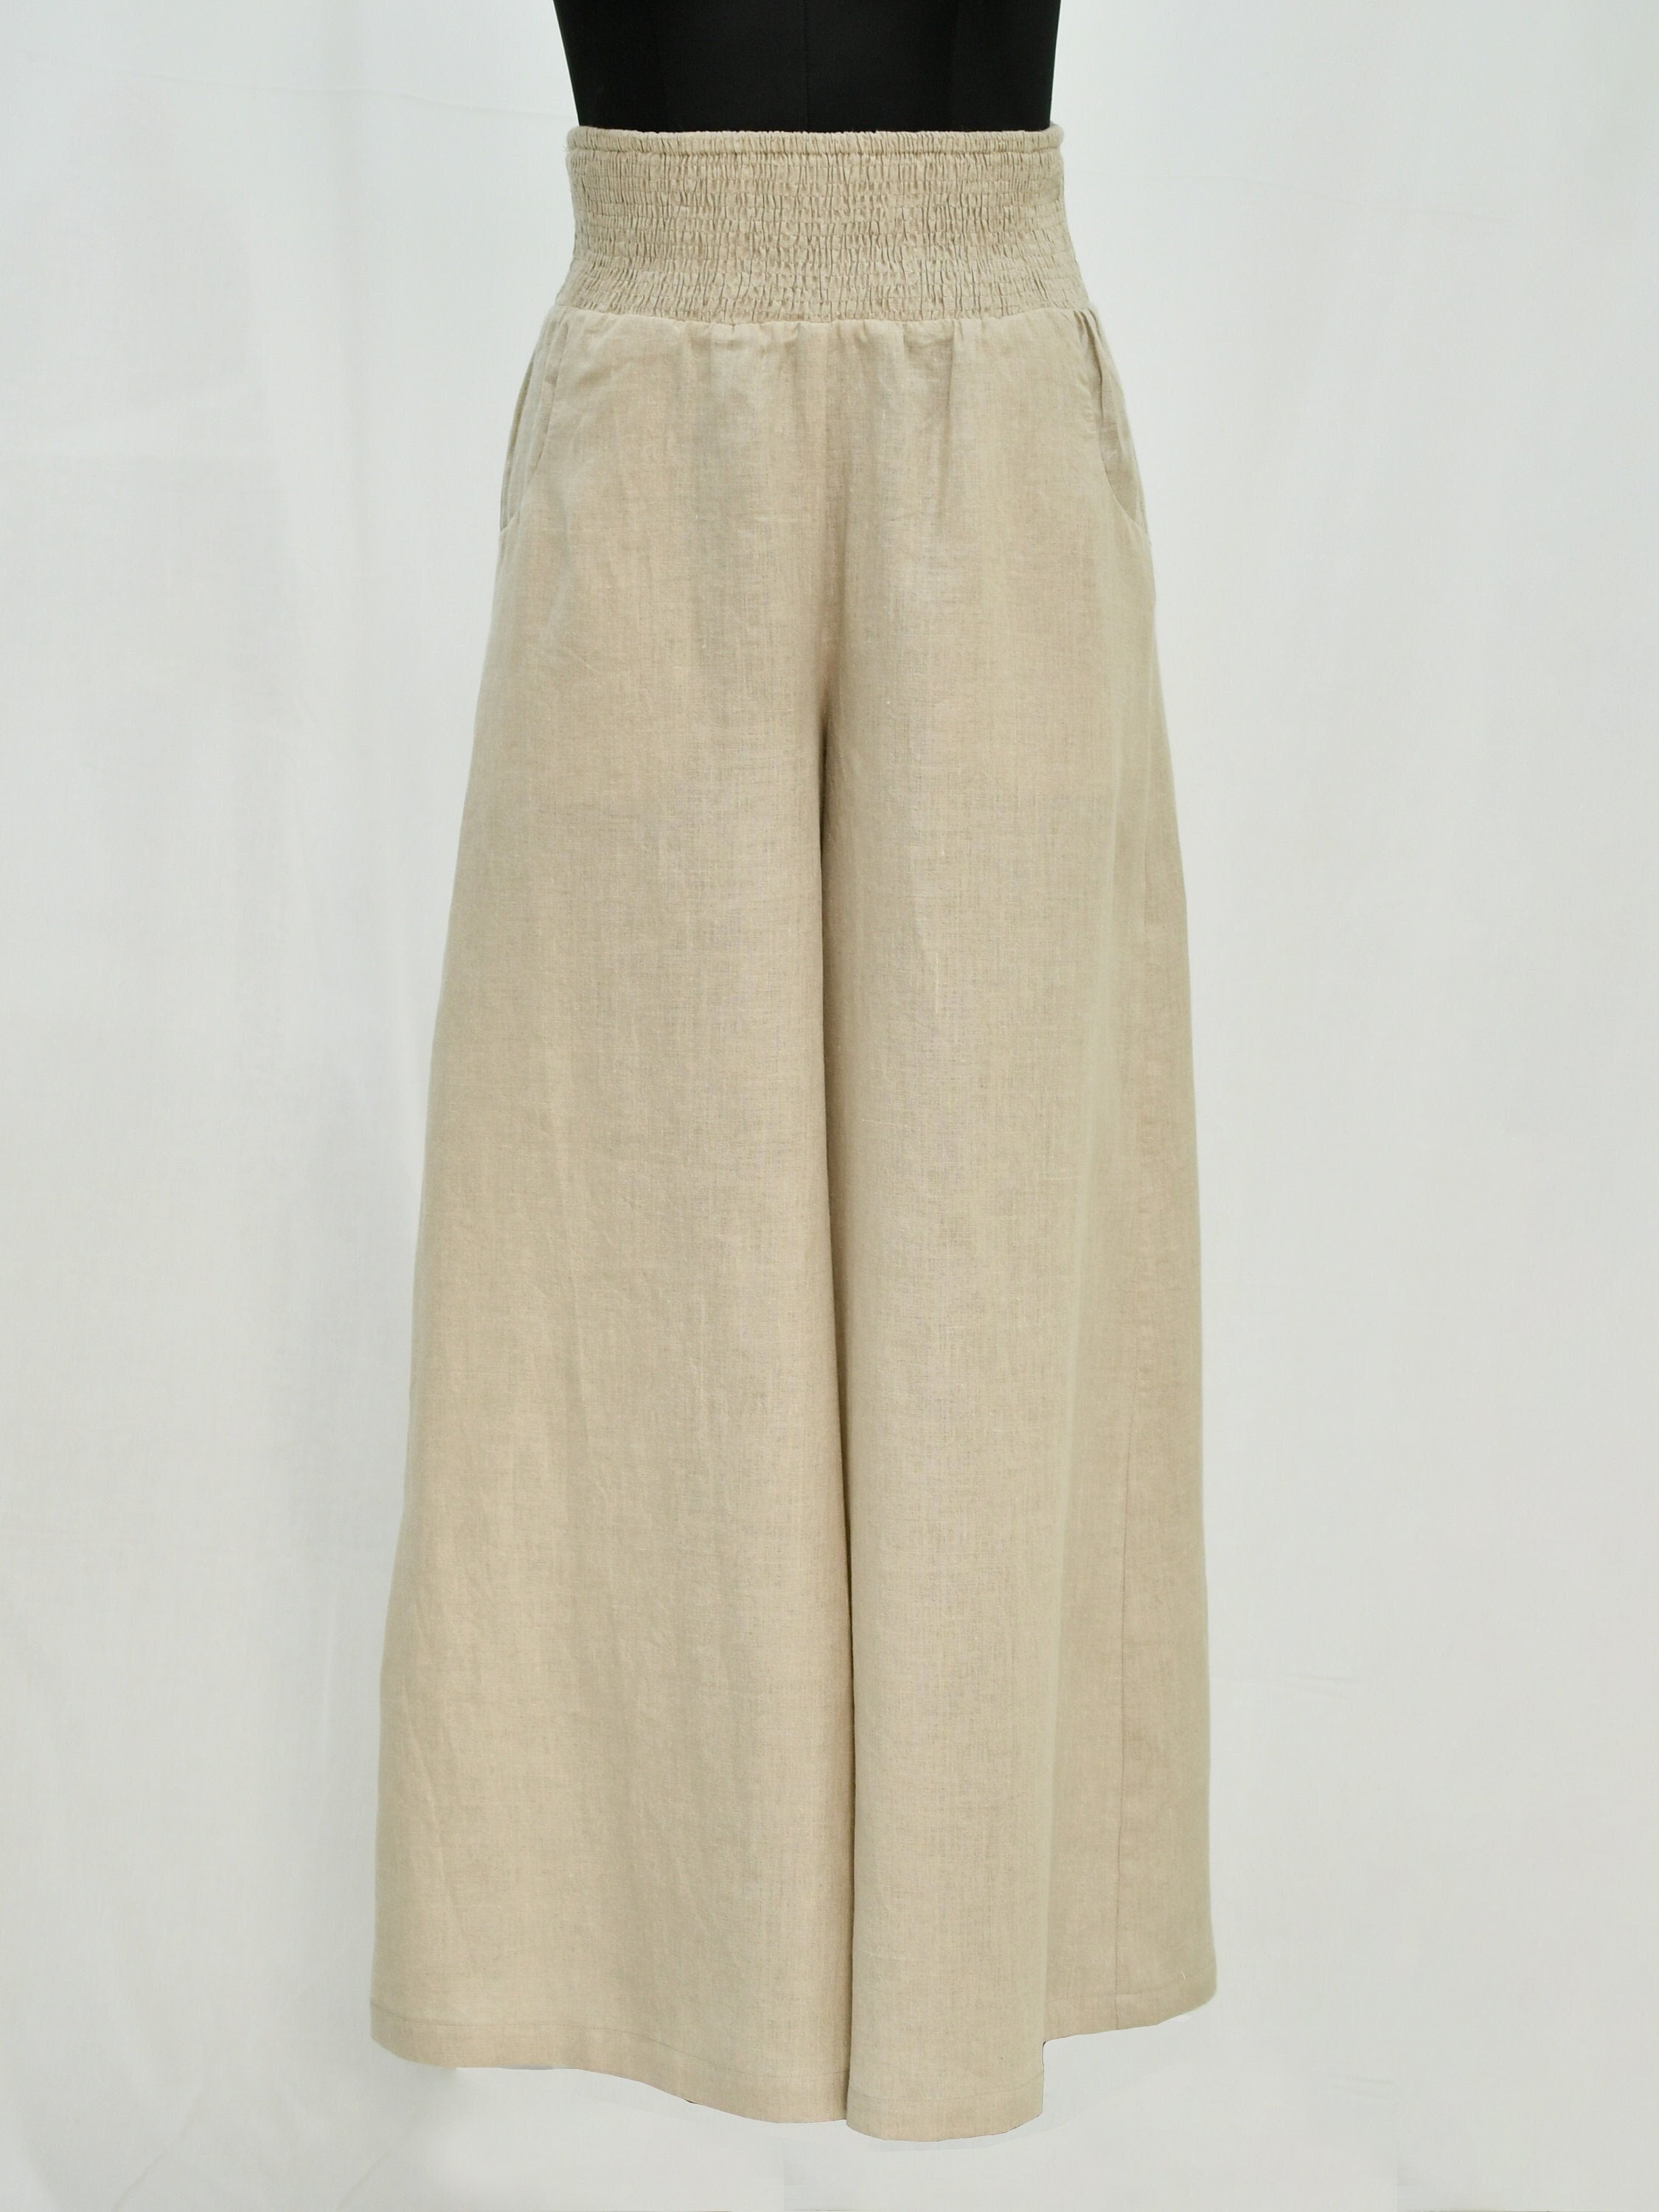 Women's Wide Legged Crop Pants